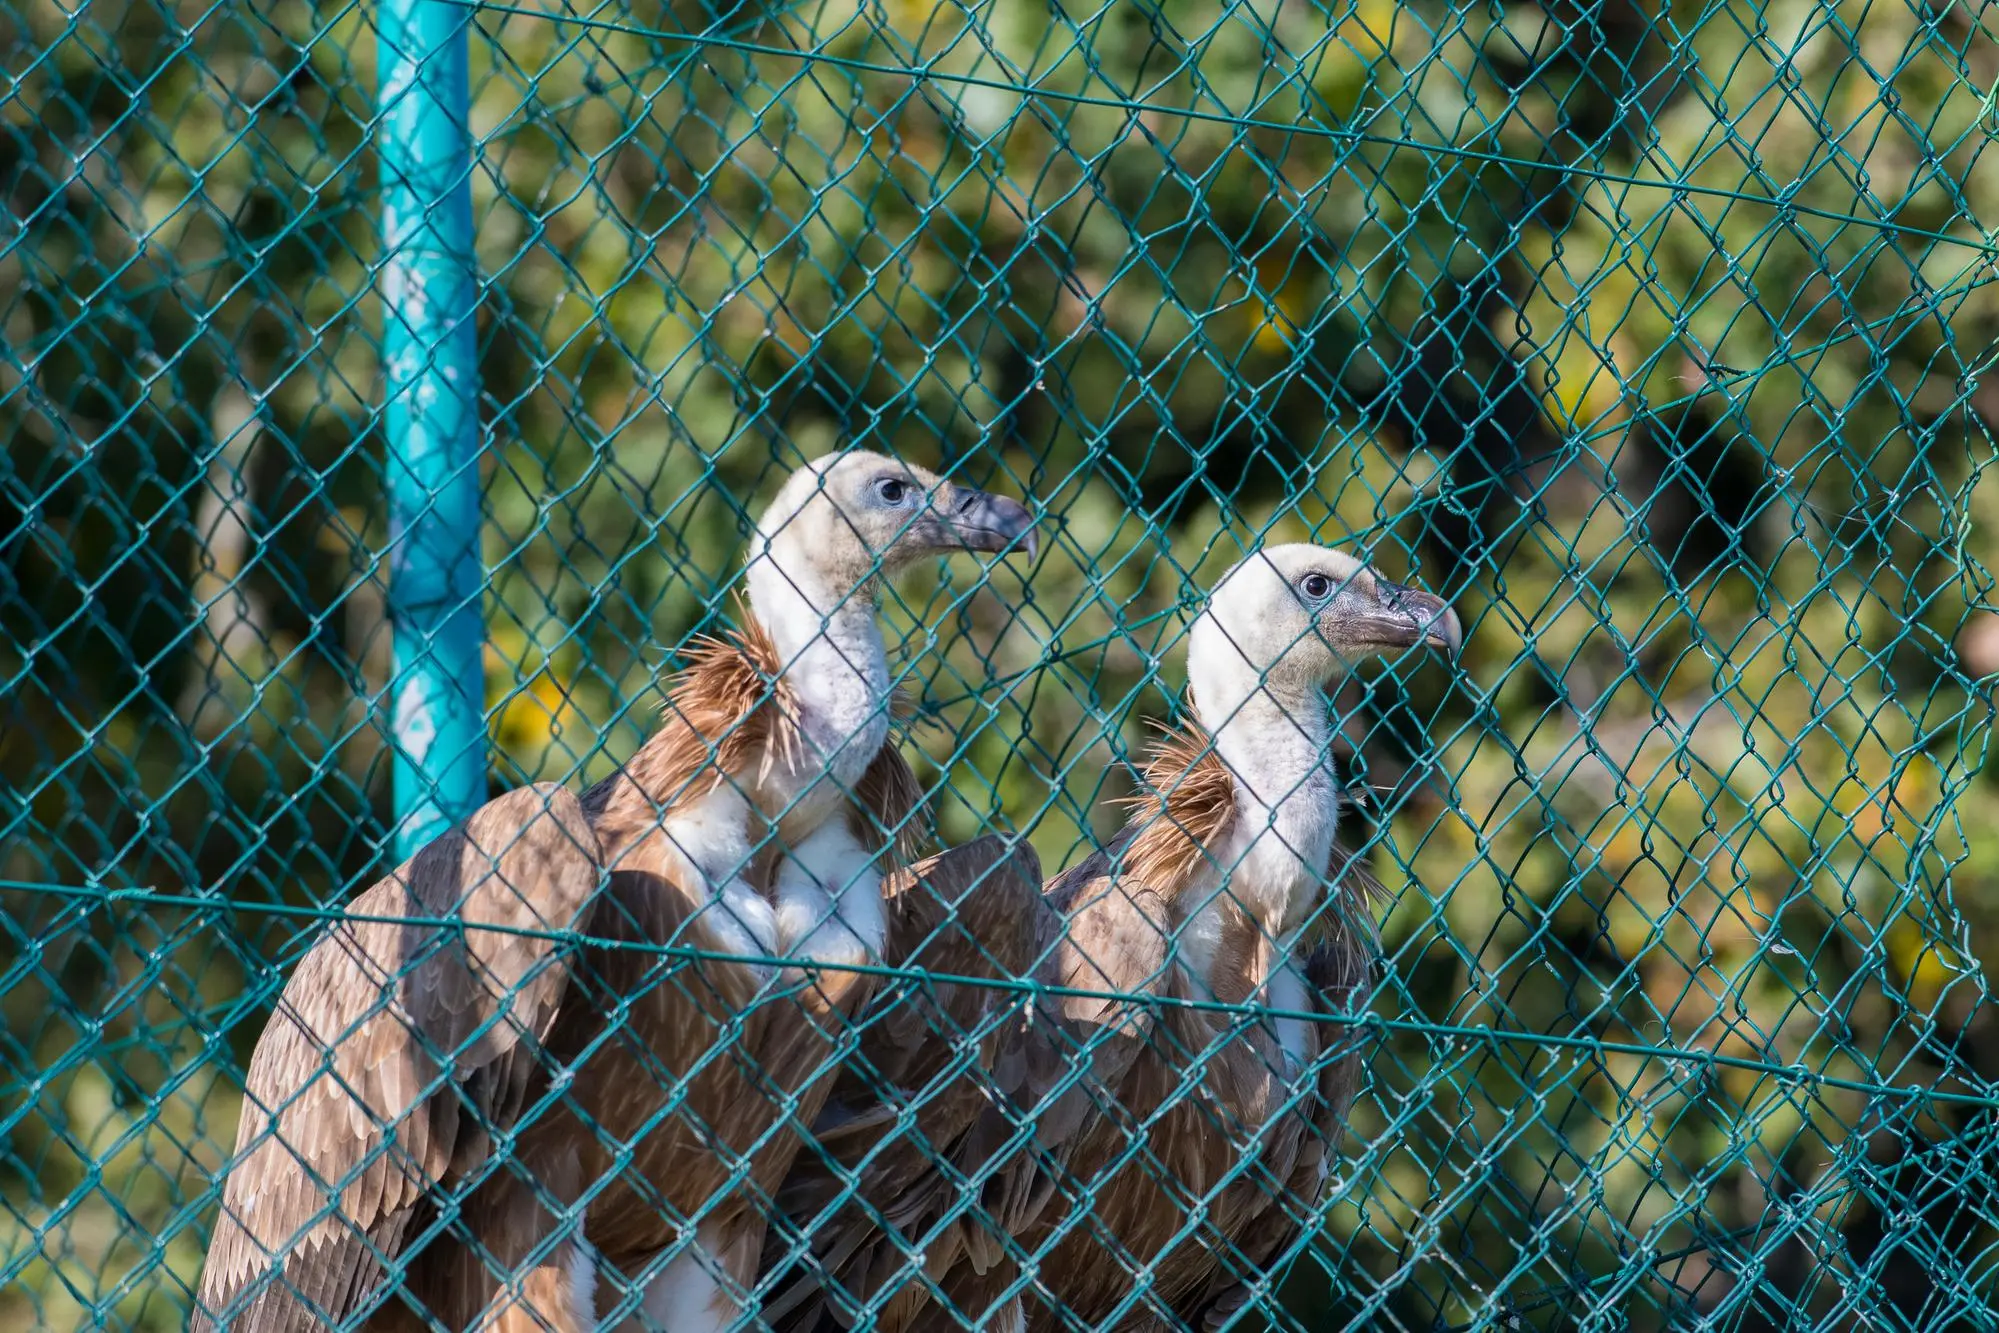 Le due femmine di grifone liberate (foto concessa)